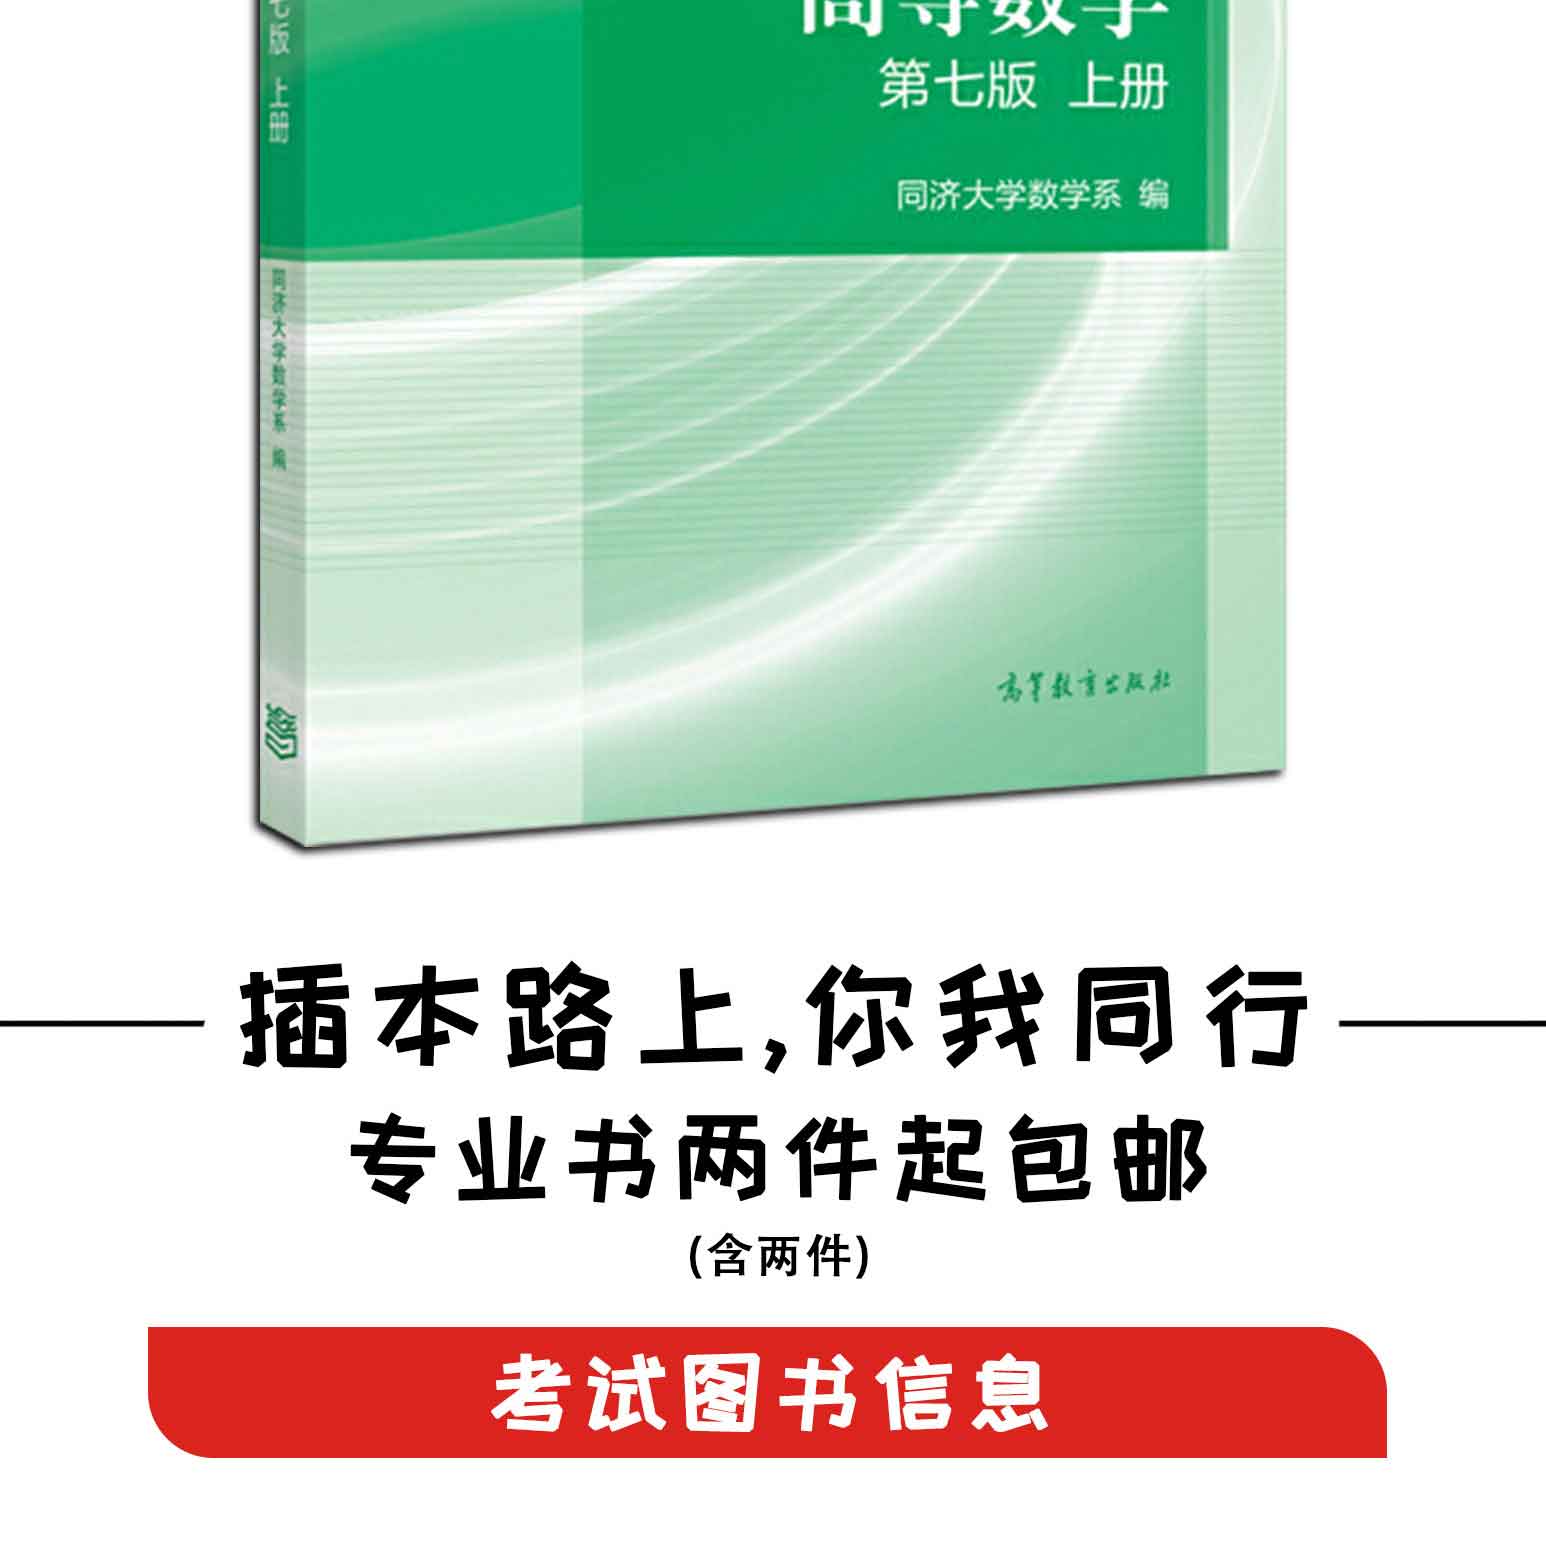 高等数学(第七版)(上册),同济大学数学系,高等教育出版社(图2)